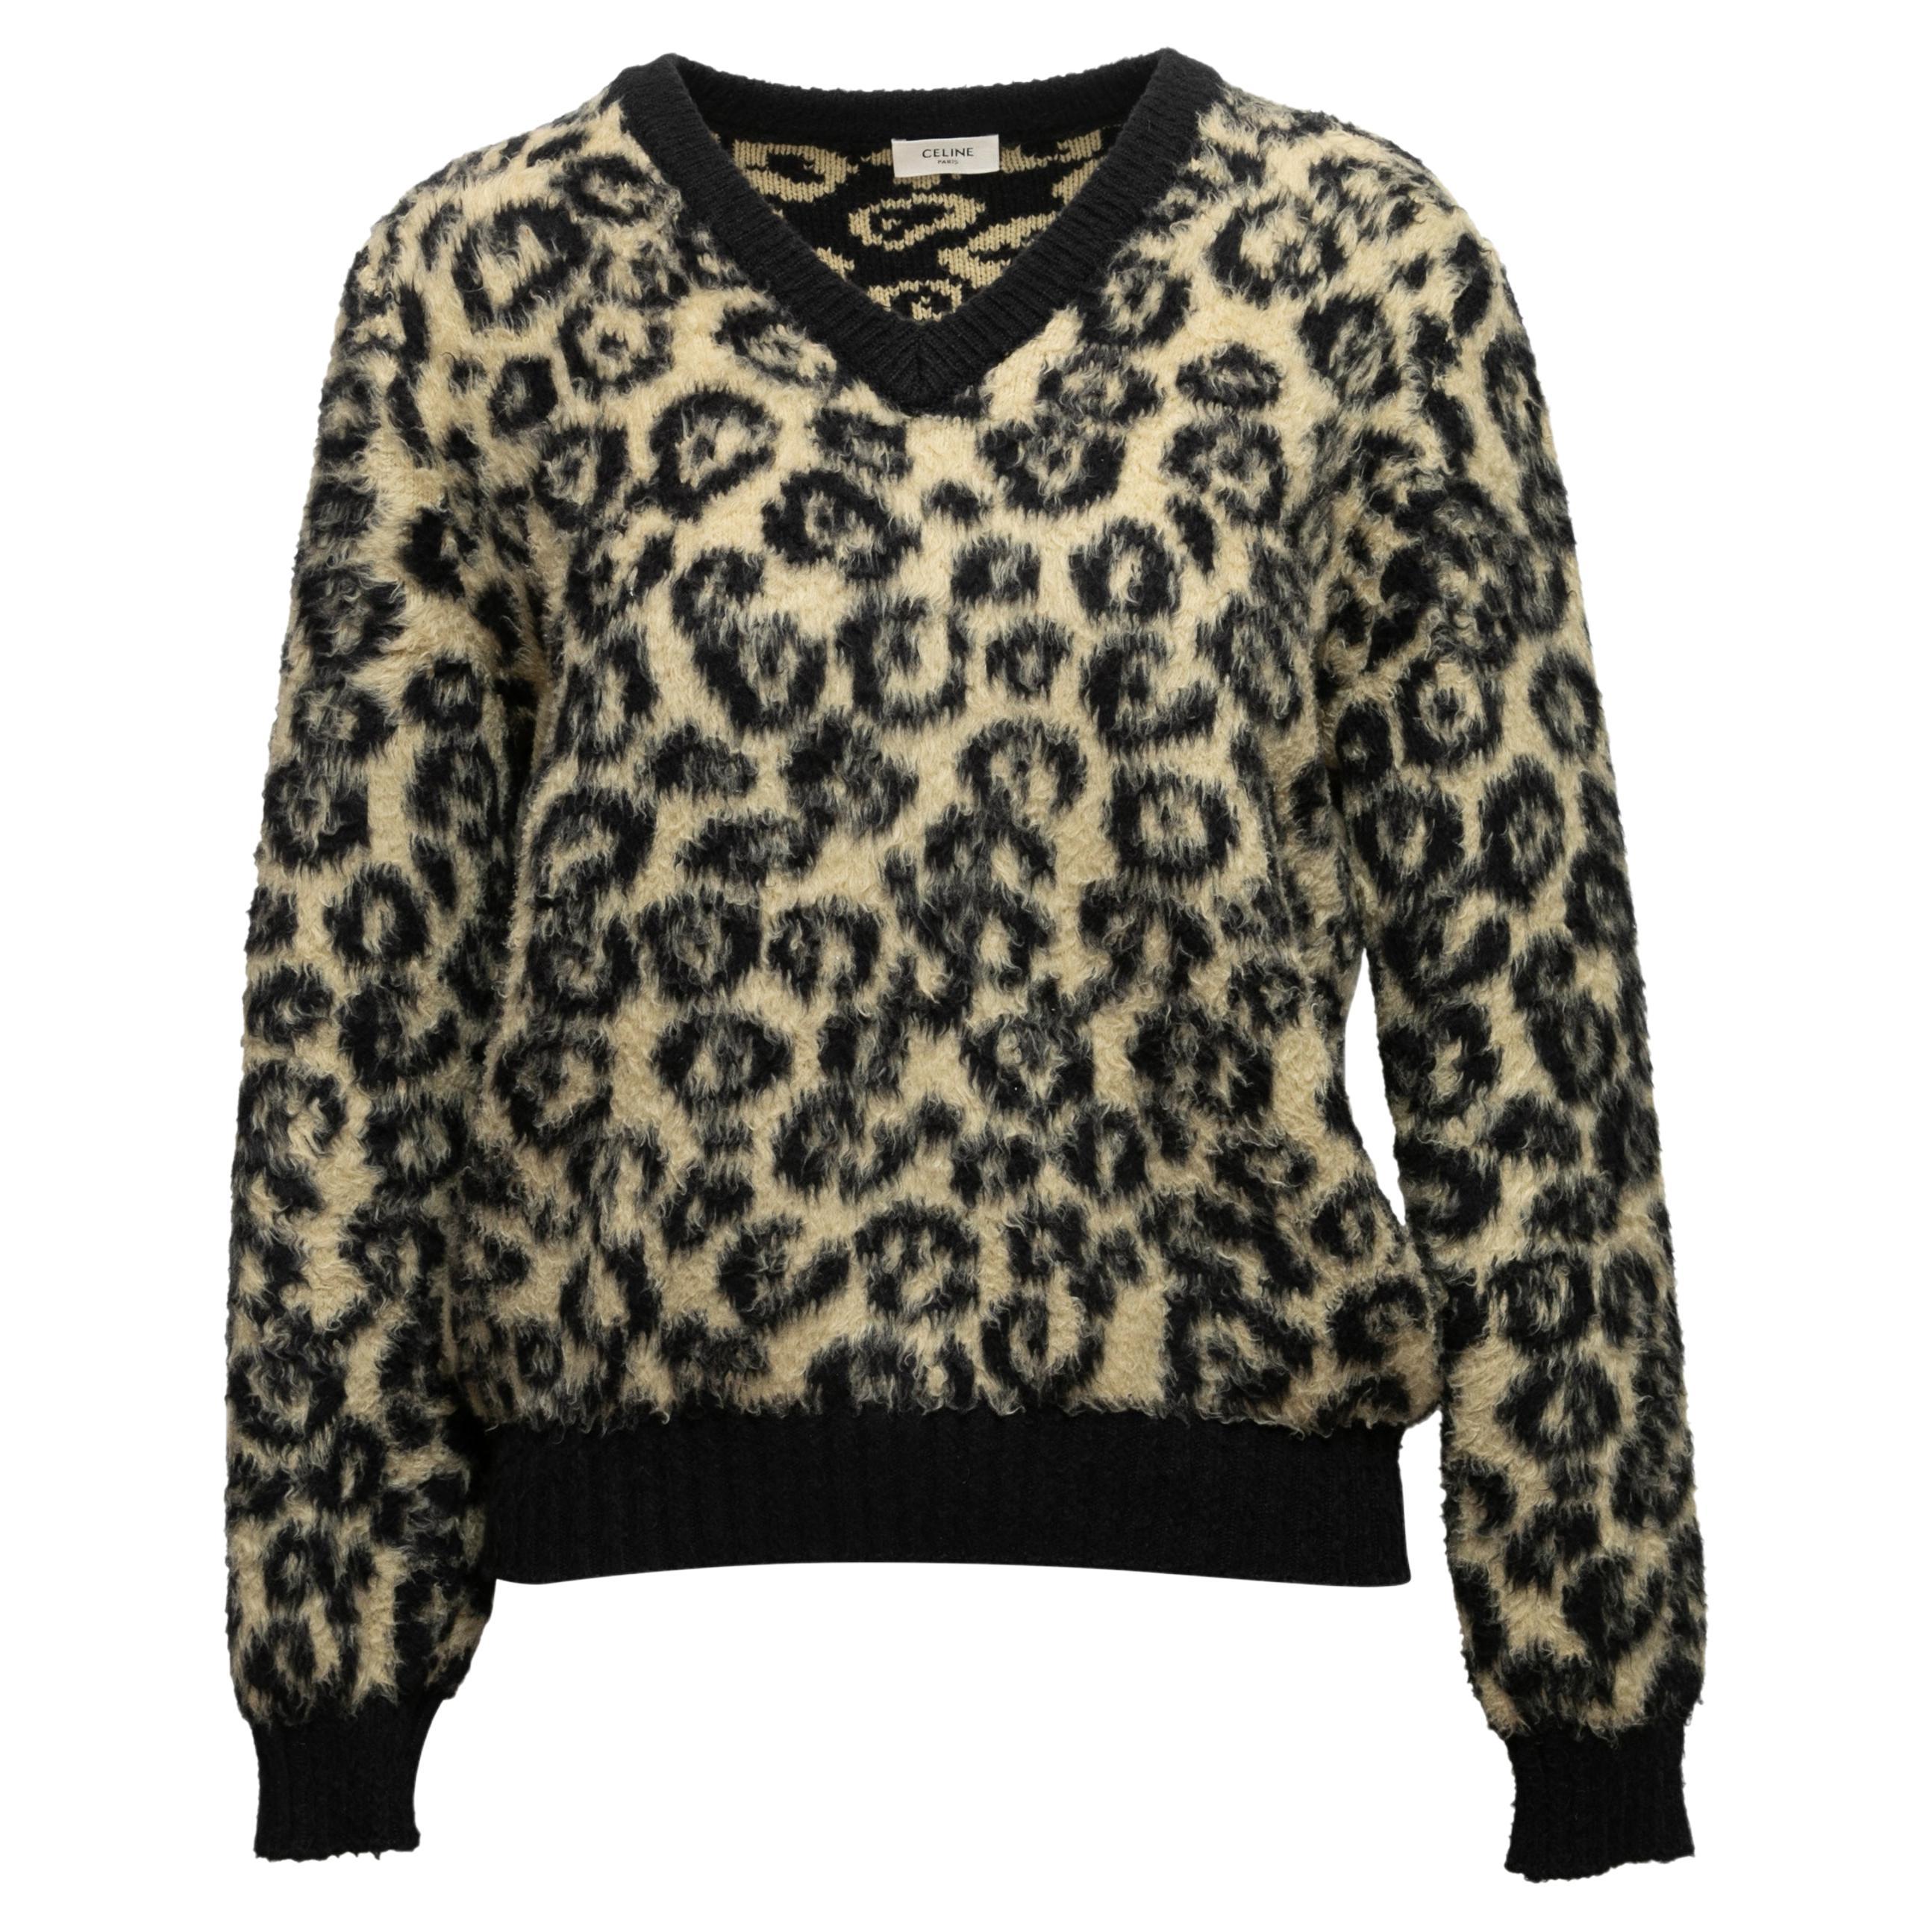 Black & Beige Celine Leopard Patterned Sweater